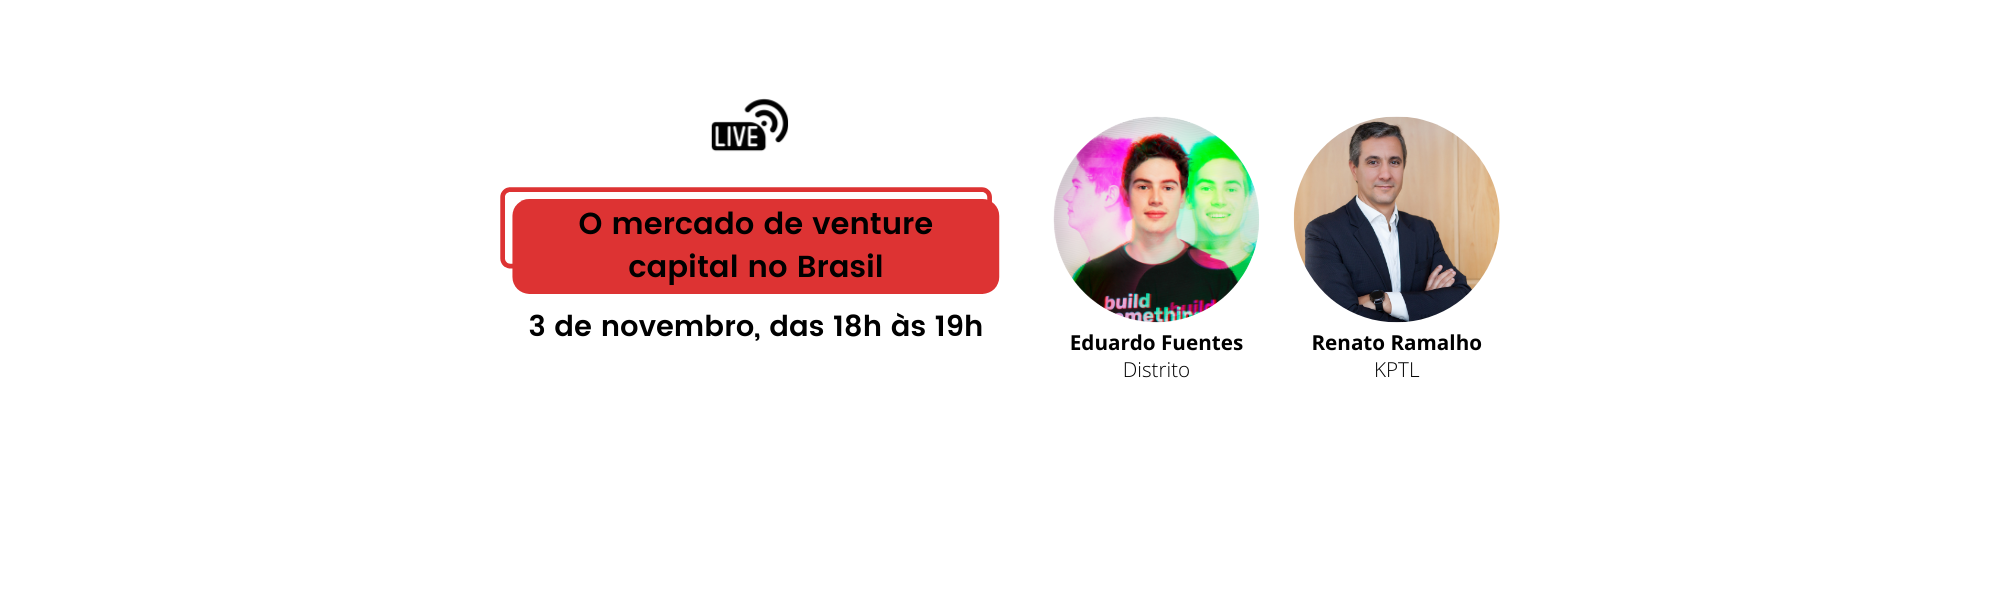 Startups Live: O atual cenário do mercado de venture capital no Brasil